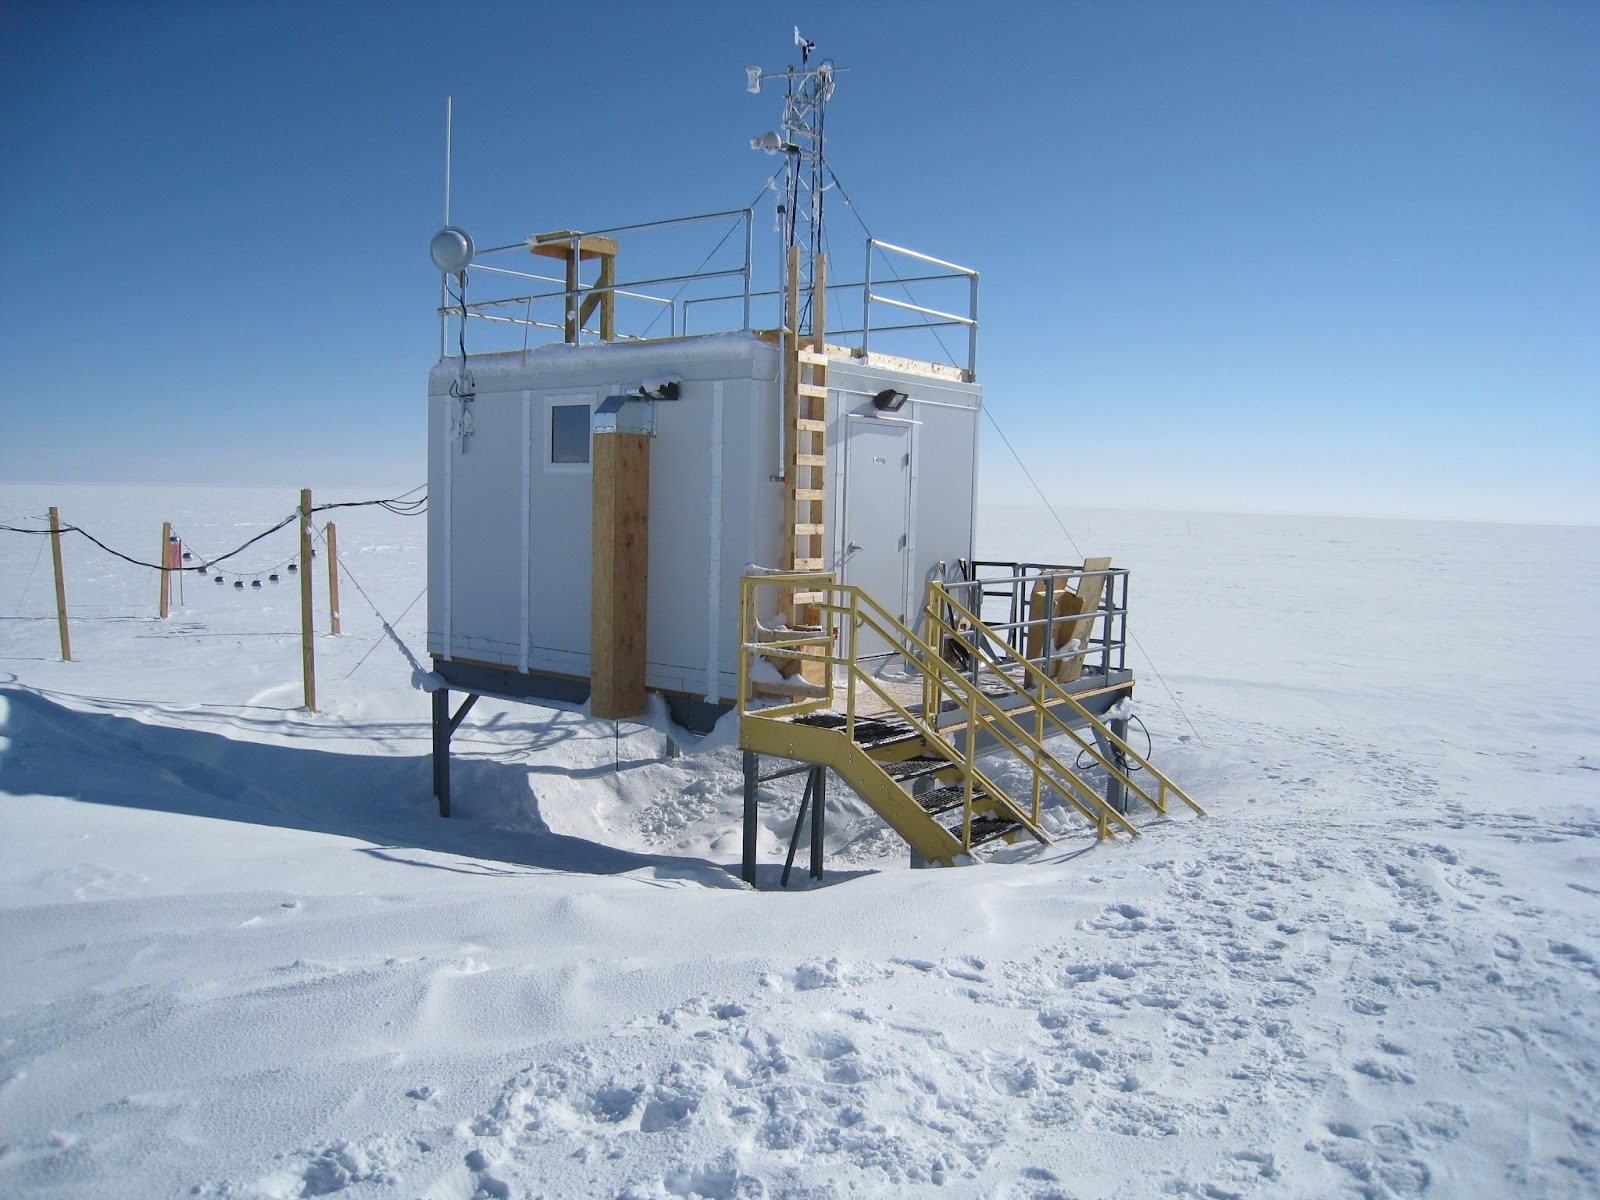 Summit Observatory